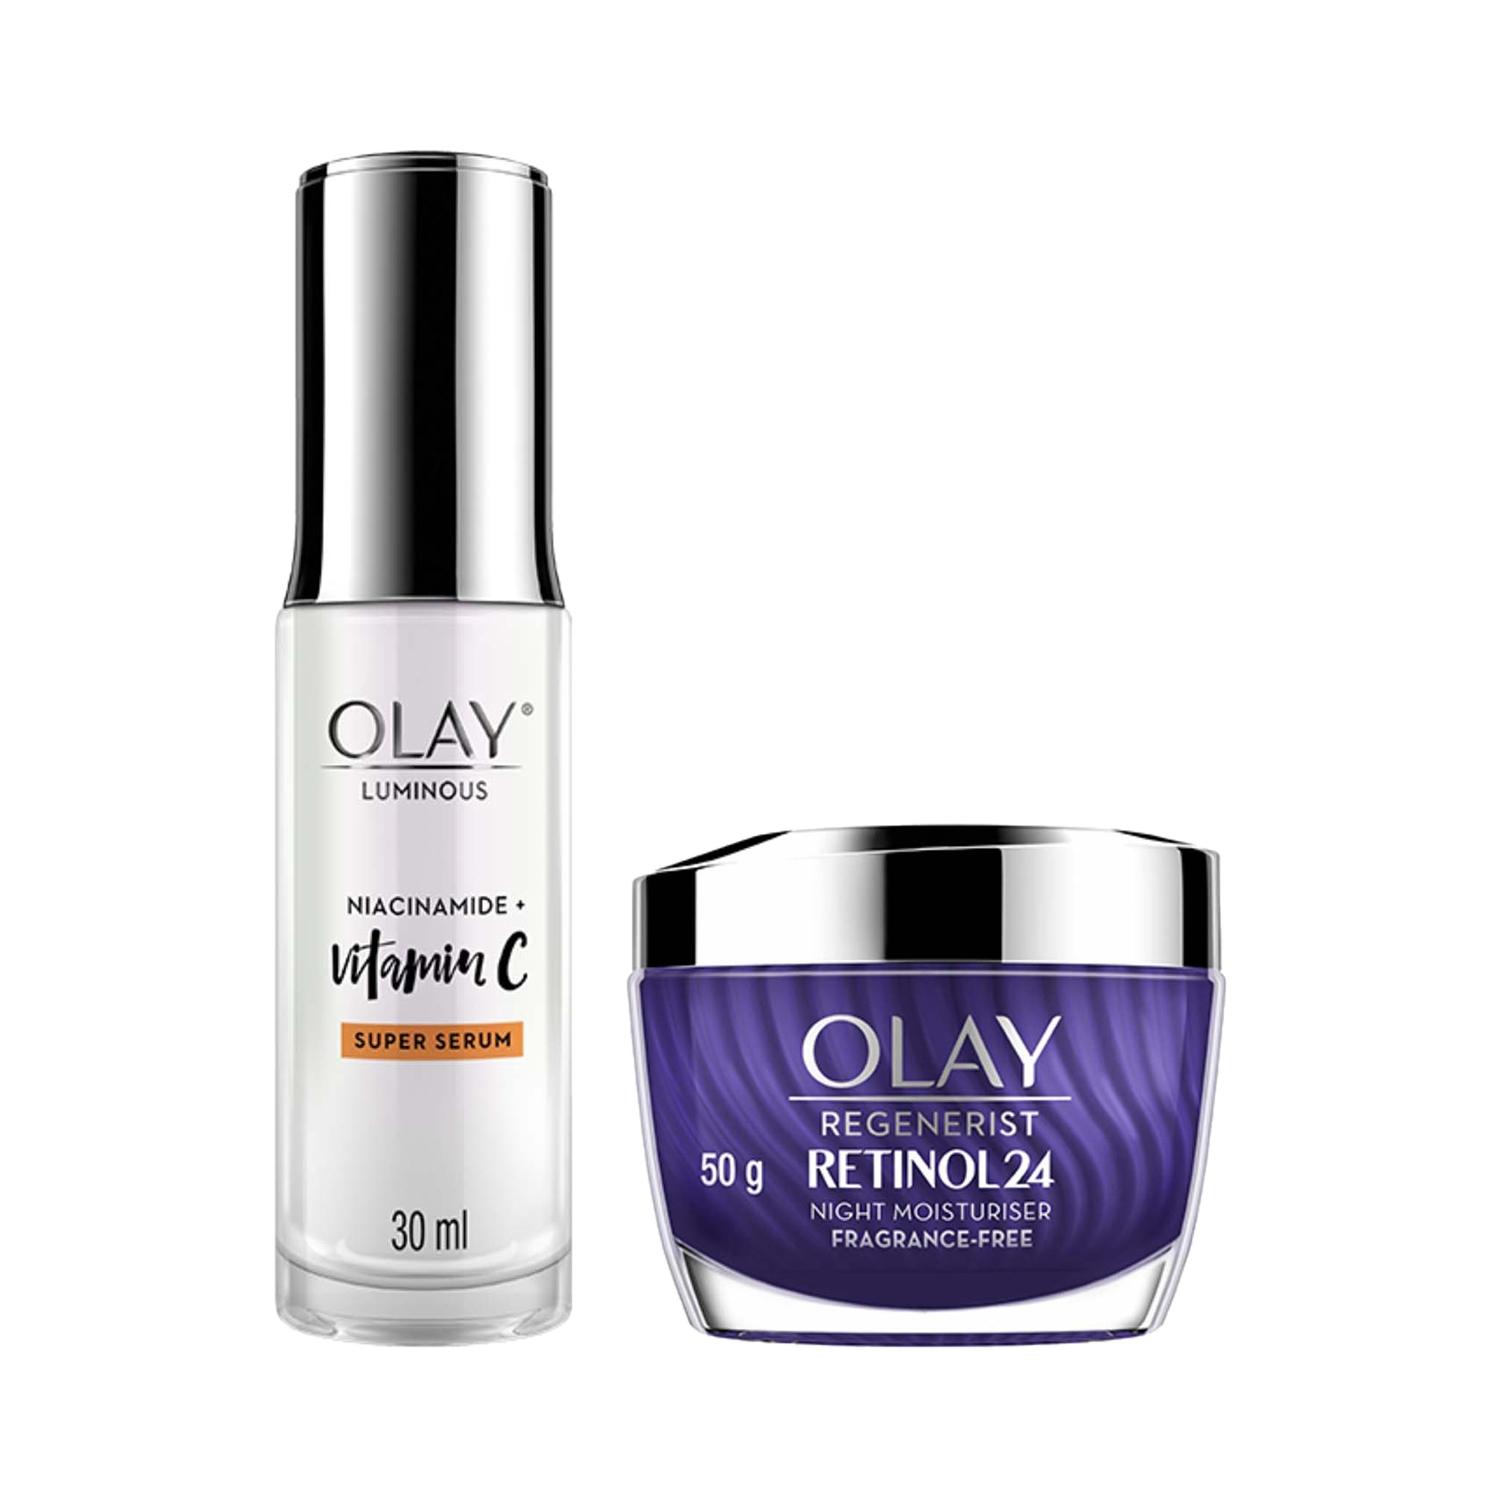 Olay | Olay Luminous Vitamin C Super Serum (30ml) And Olay Retinol Night Cream (50g) Combo